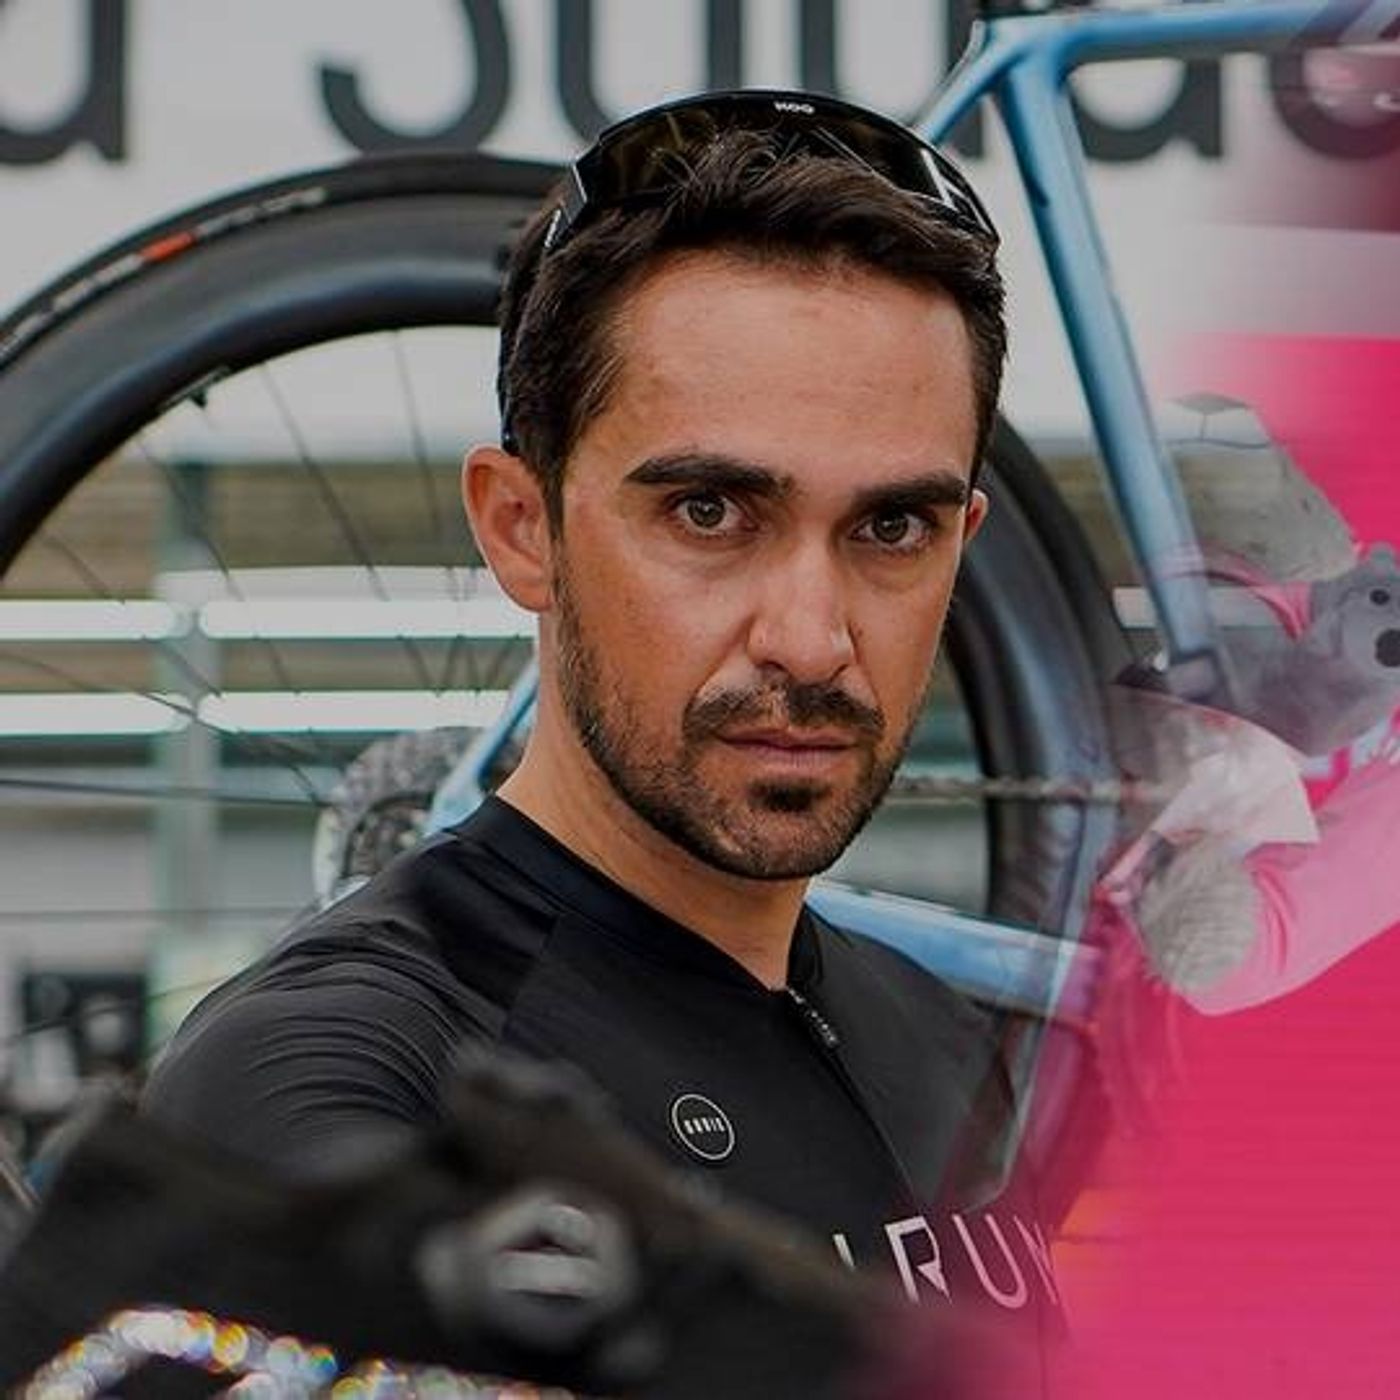 “Estamos viendo un boom de corredores jóvenes que vuelan”: Alberto Contador sobre Giro de Italia